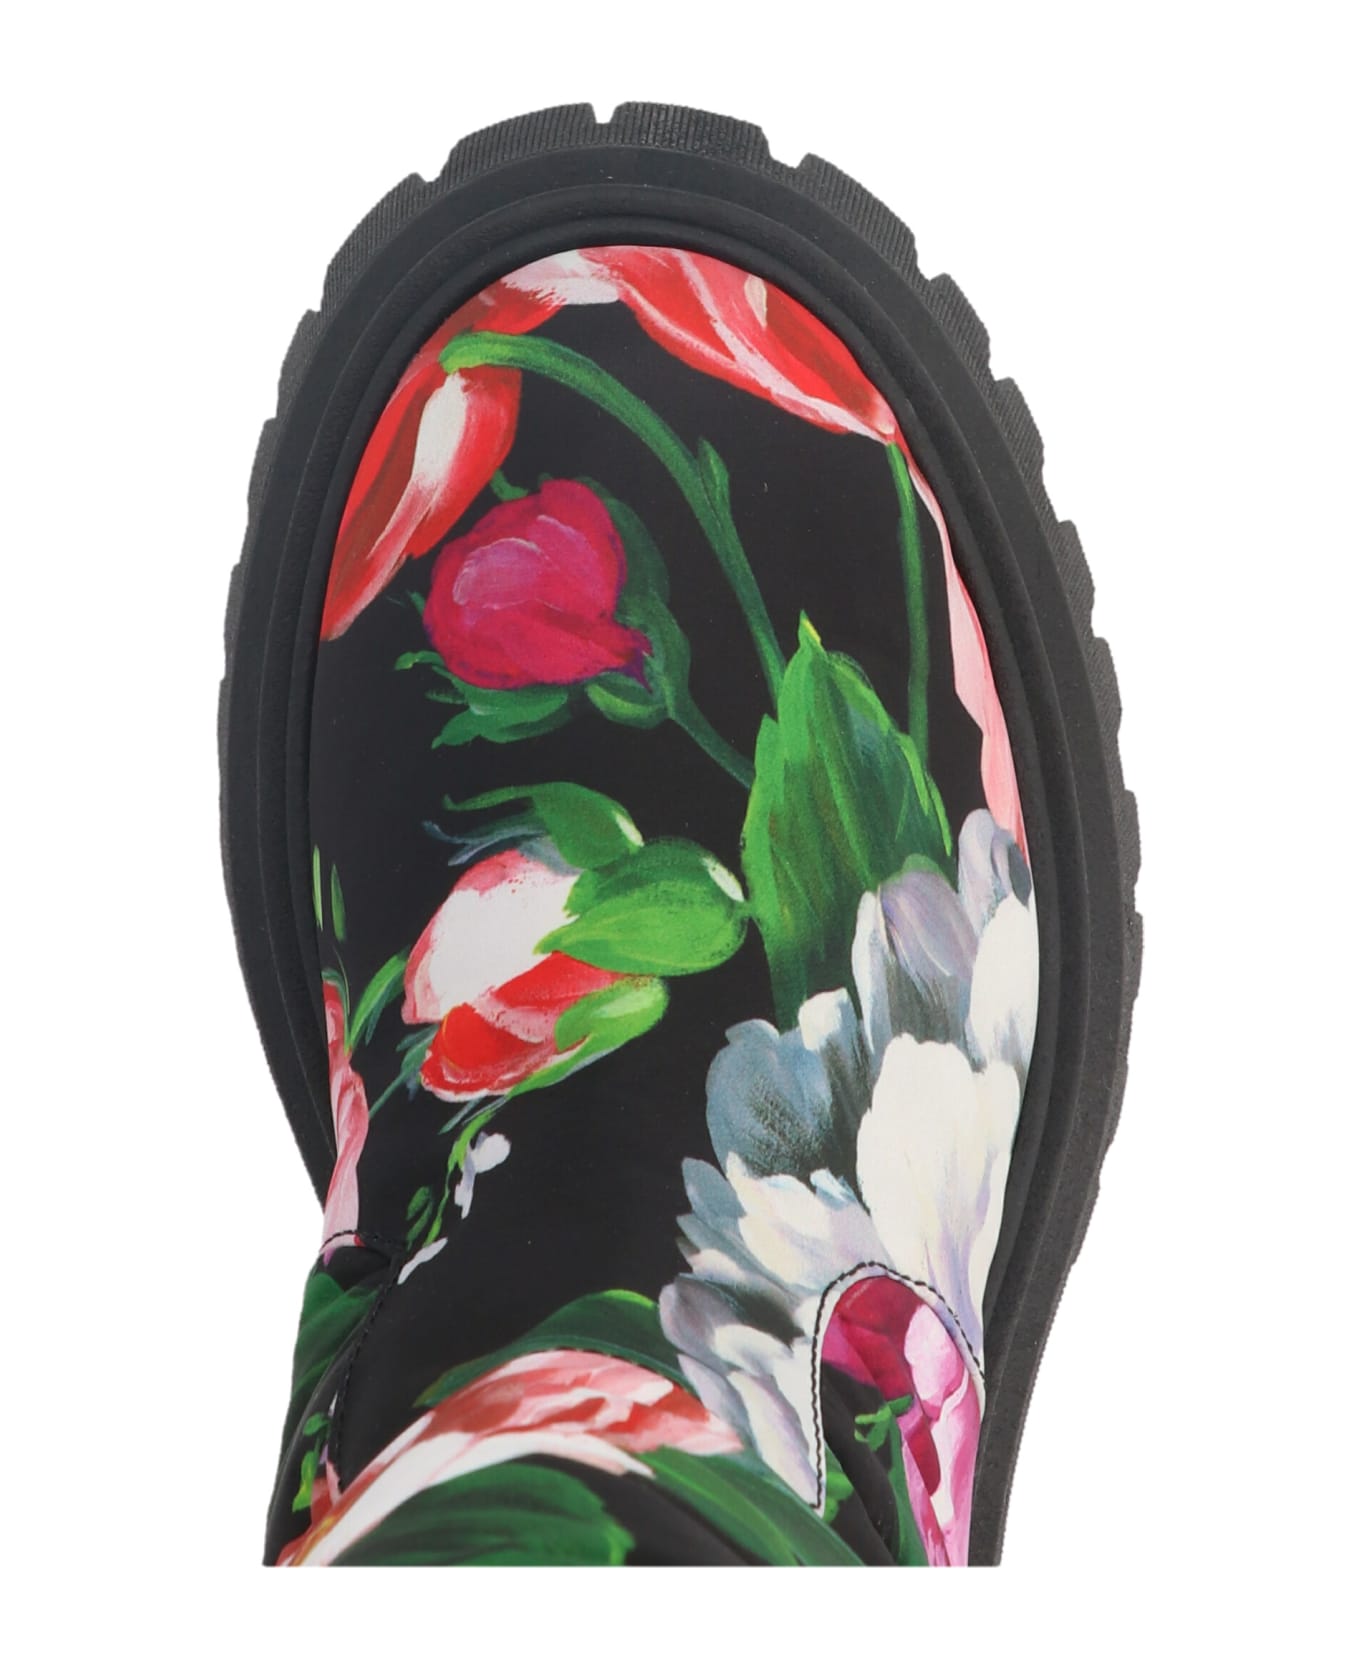 Dolce & Gabbana 'fiori Pittorici  Boots - Multicolor